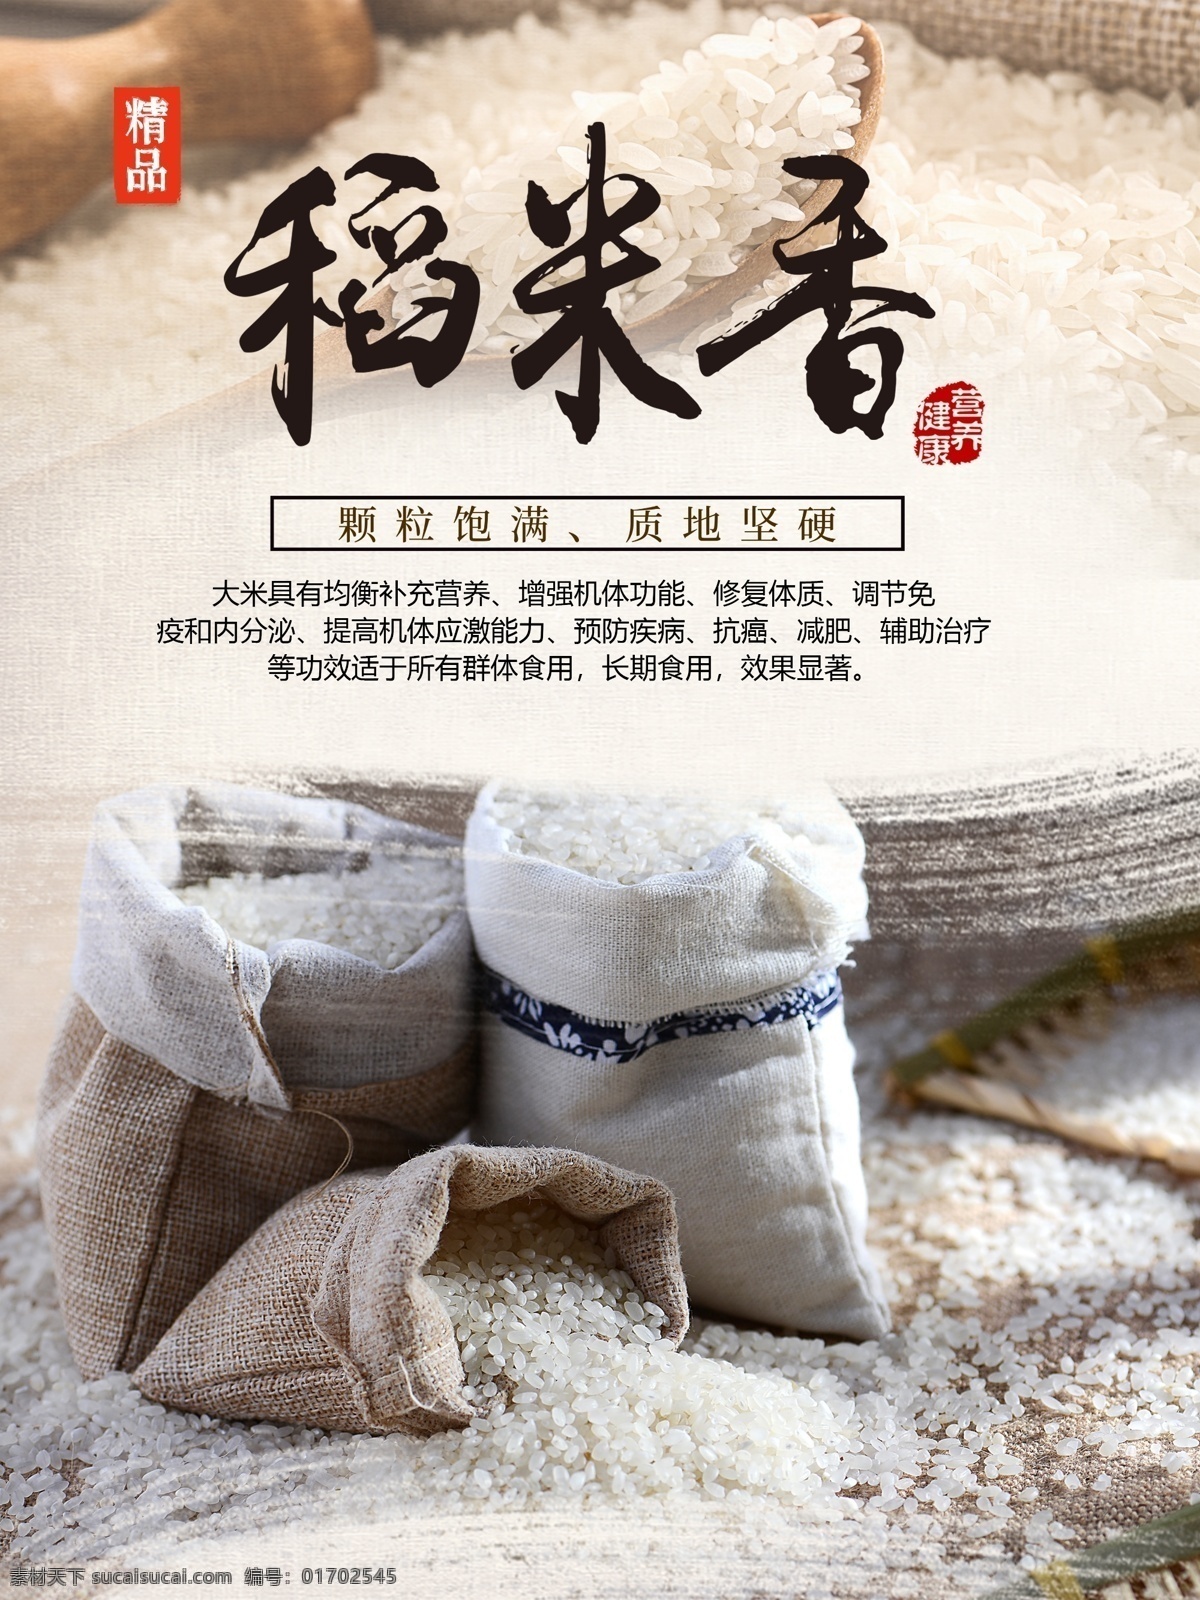 稻谷 香 大米 海报 稻谷香 大米海报 优质大米 精品大米 东北大米 香米 有机大米 天然大米 分层